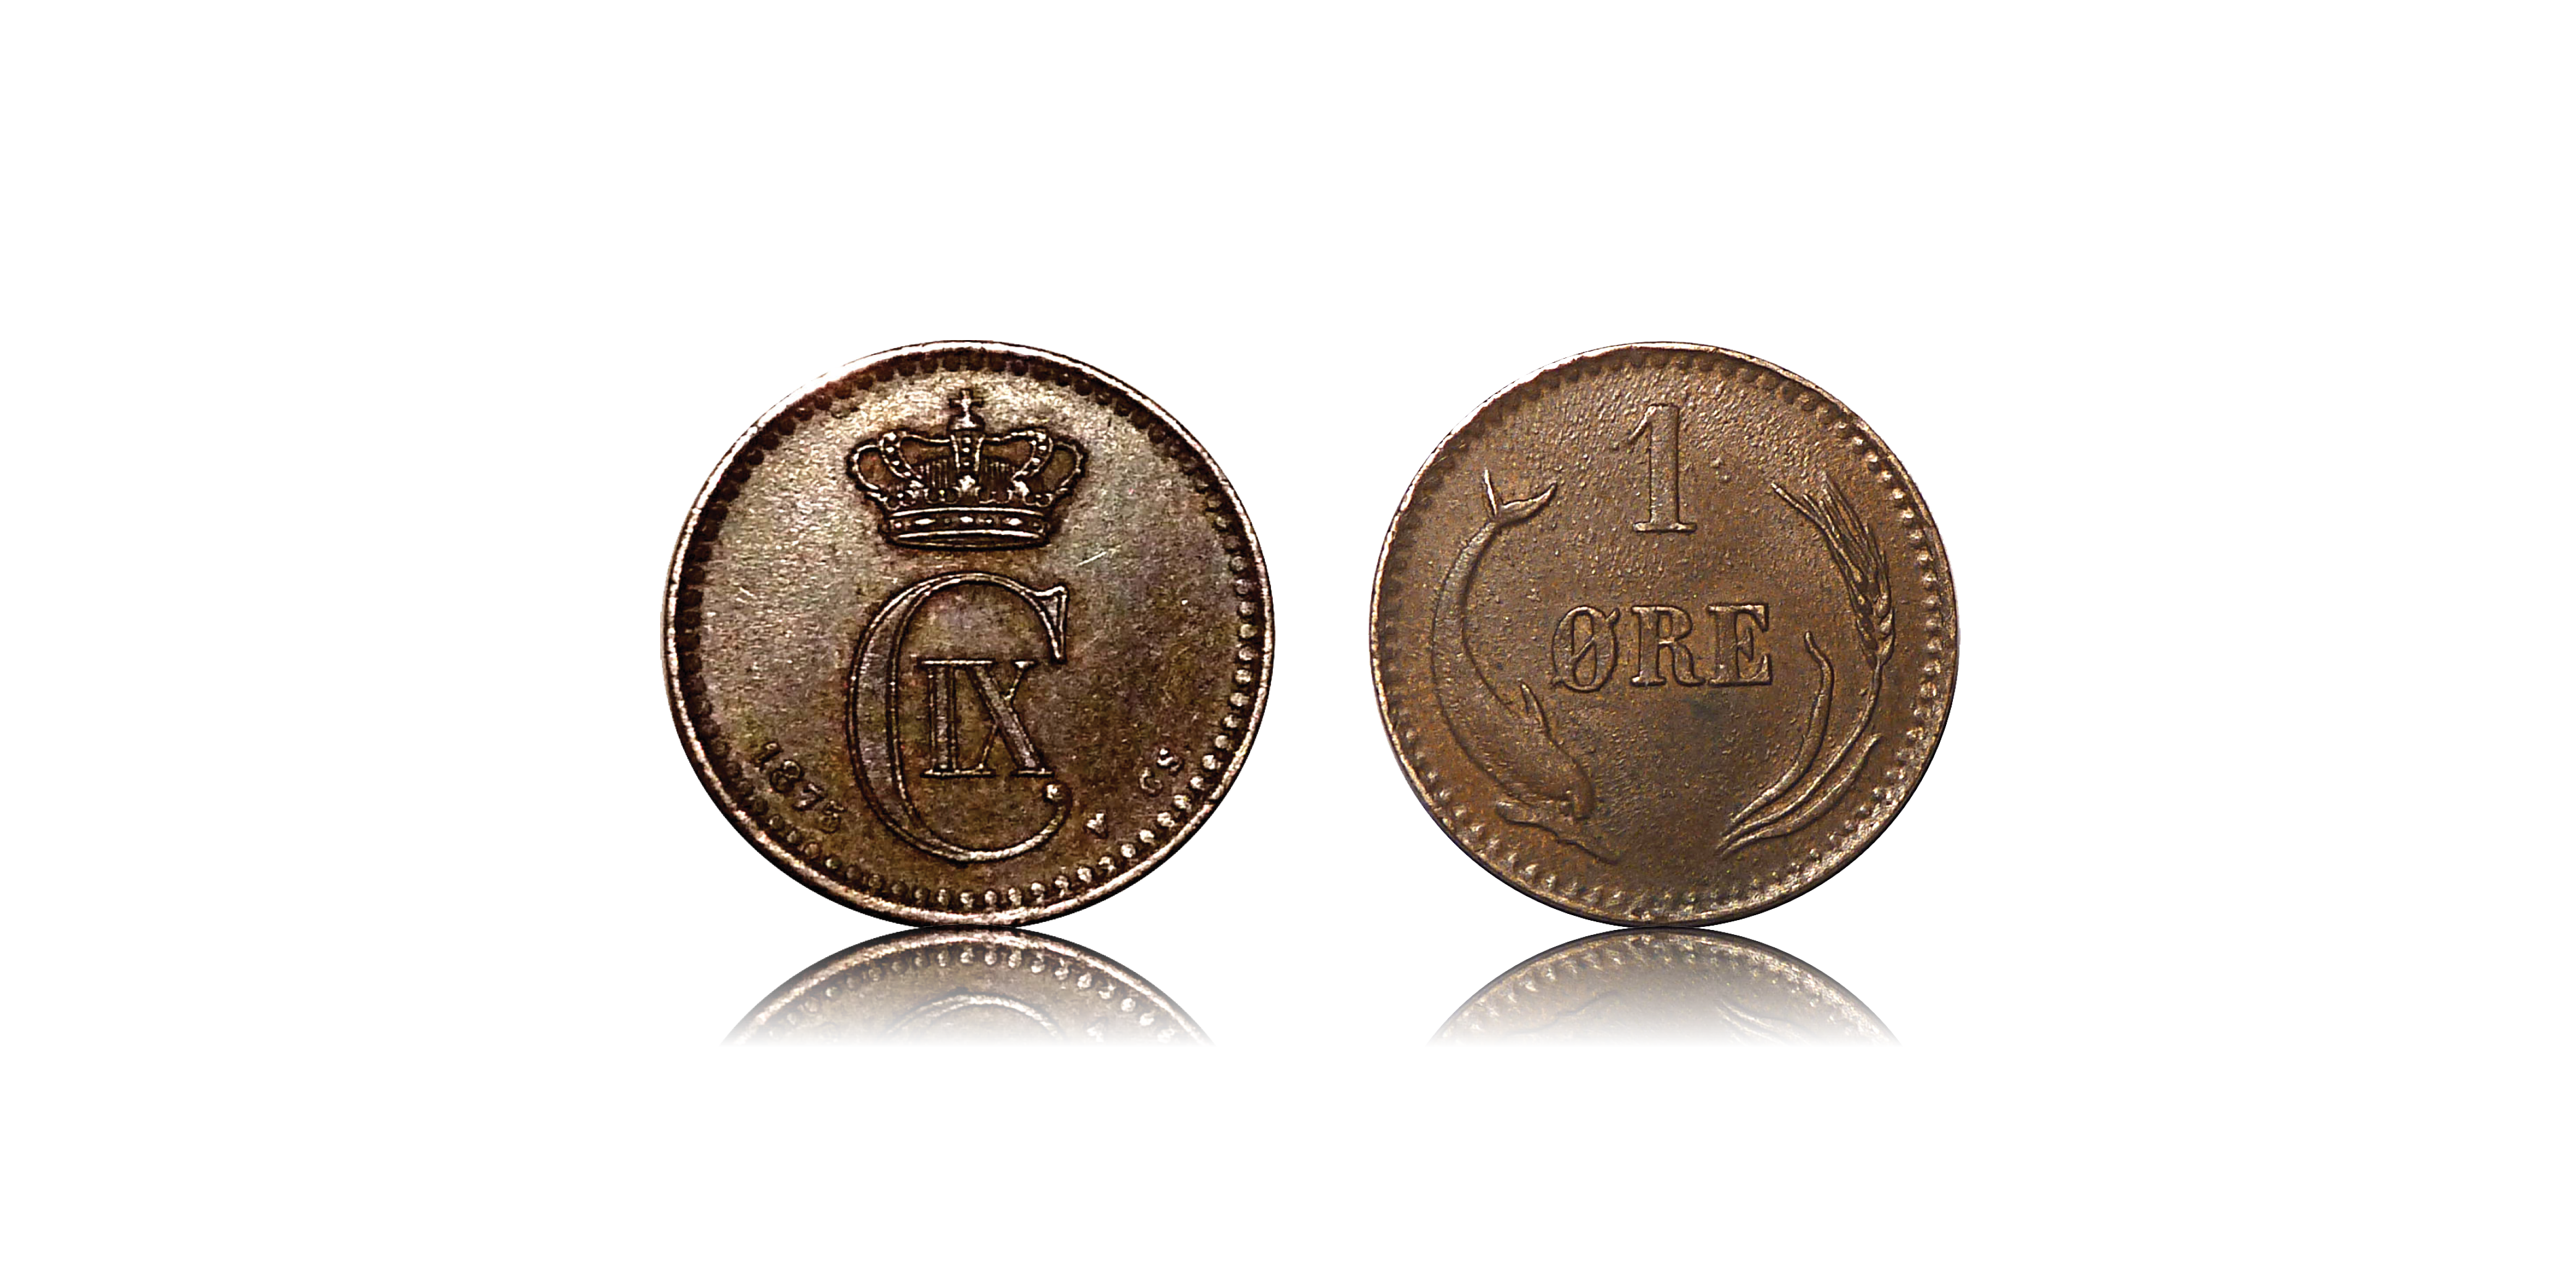 1 øre Christian XI 1874 - Udgivet af Christian IX - Europas svigerfar. Bestil Danmarks første øremønt i dag til kun 595 kr! 